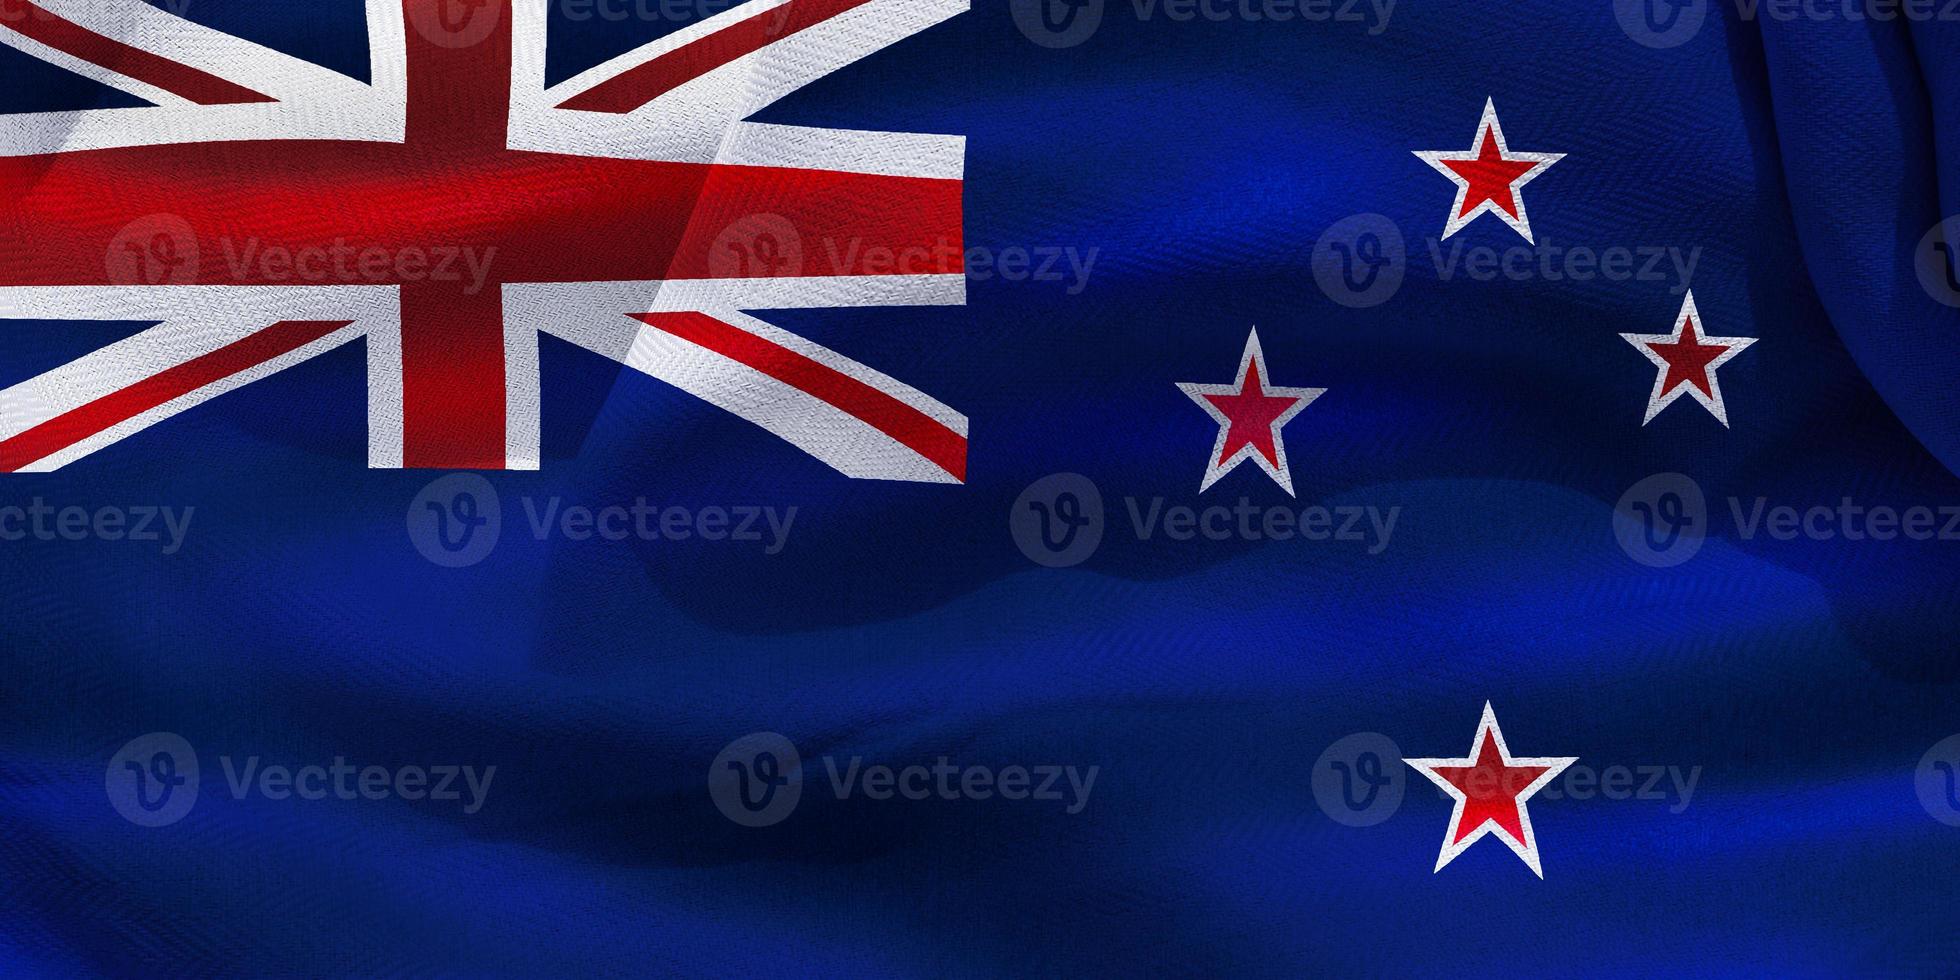 3D-Darstellung einer neuseeländischen Flagge - realistische wehende Stoffflagge foto